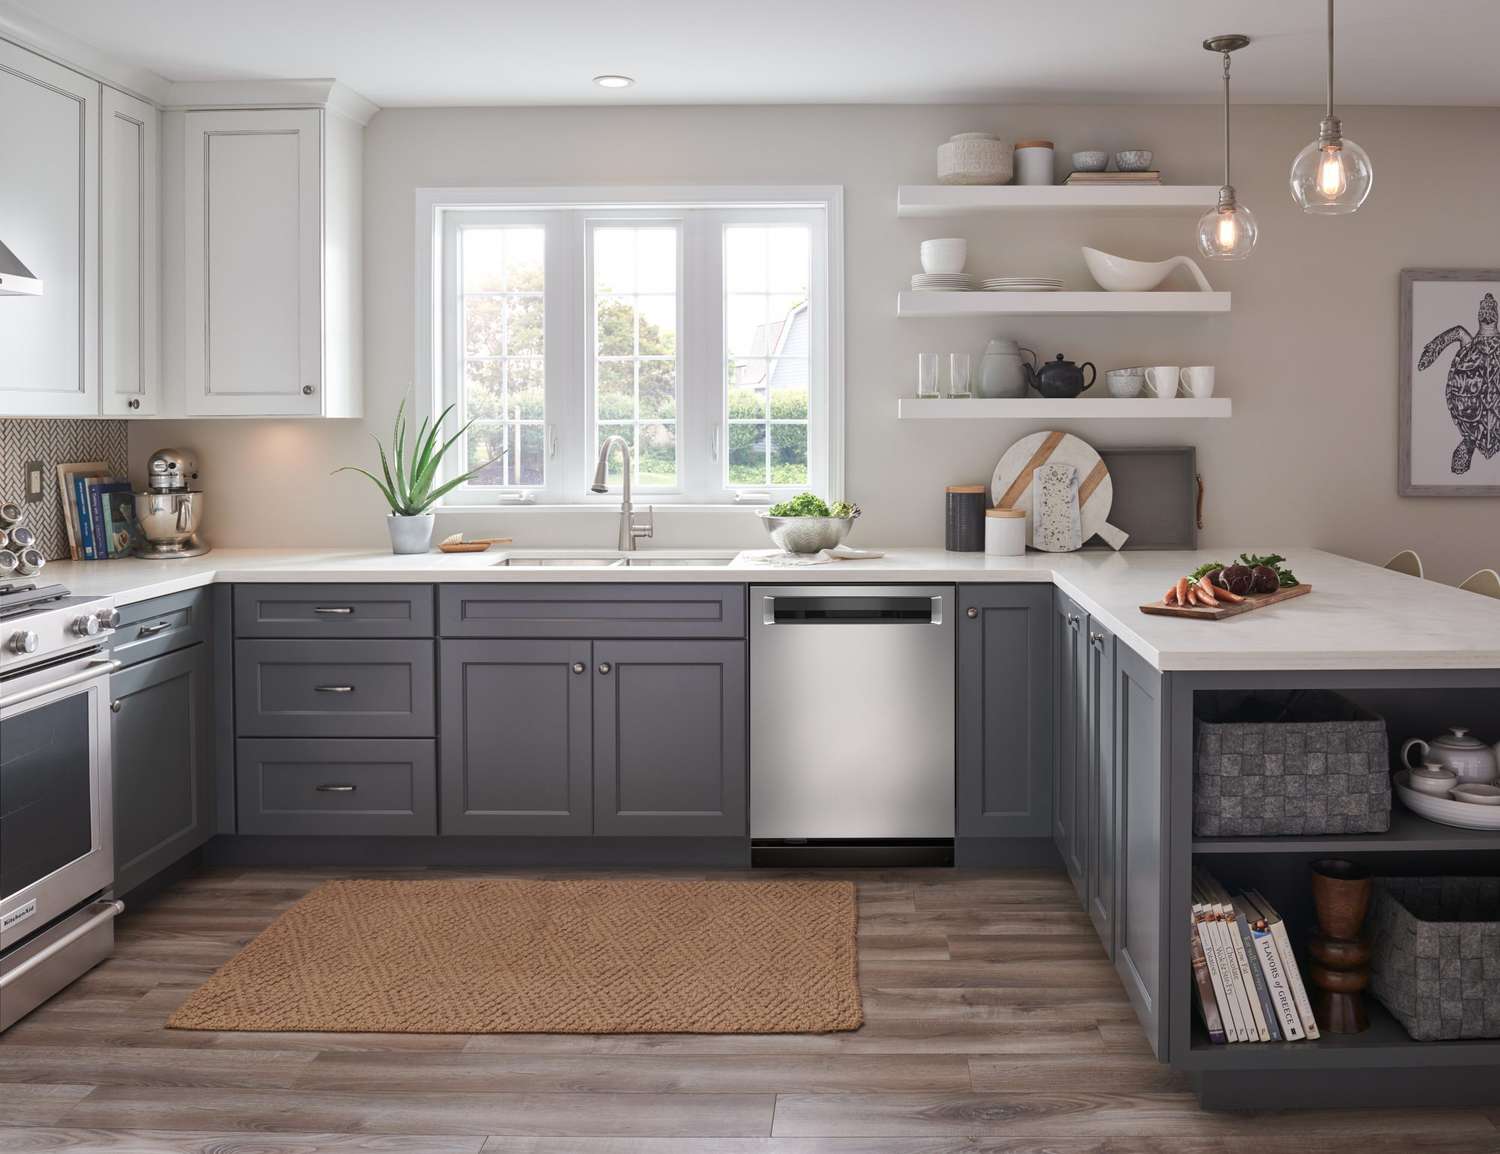 20 Best Kitchen Remodel Ideas   Martha Stewart